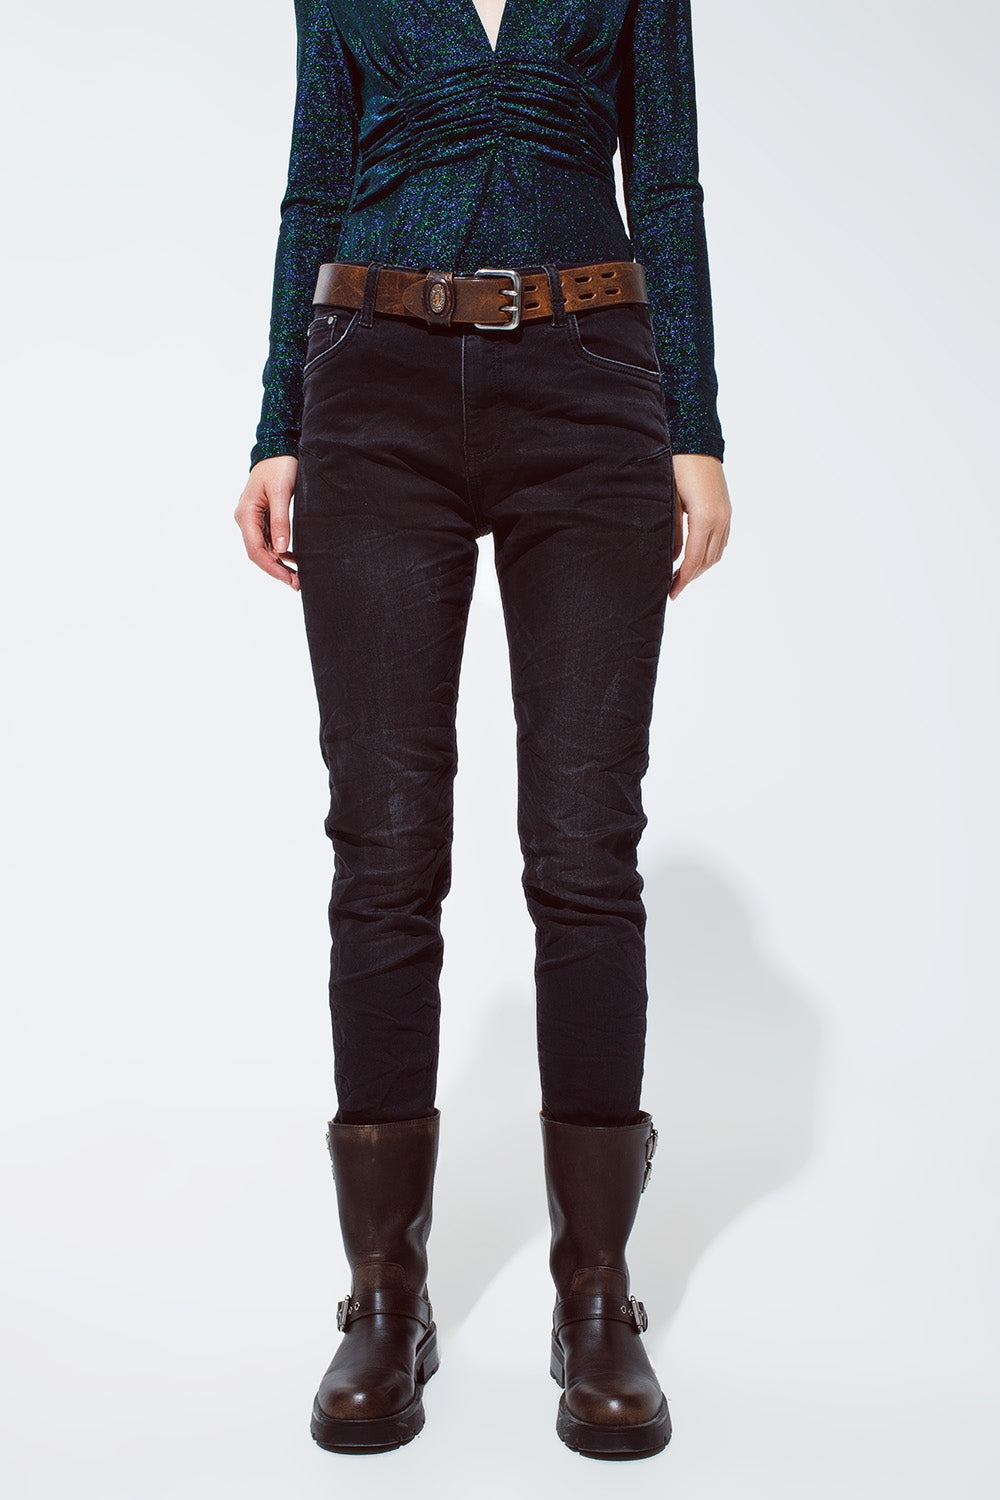 Q2 jeans neri con vita elastica e cordoncino